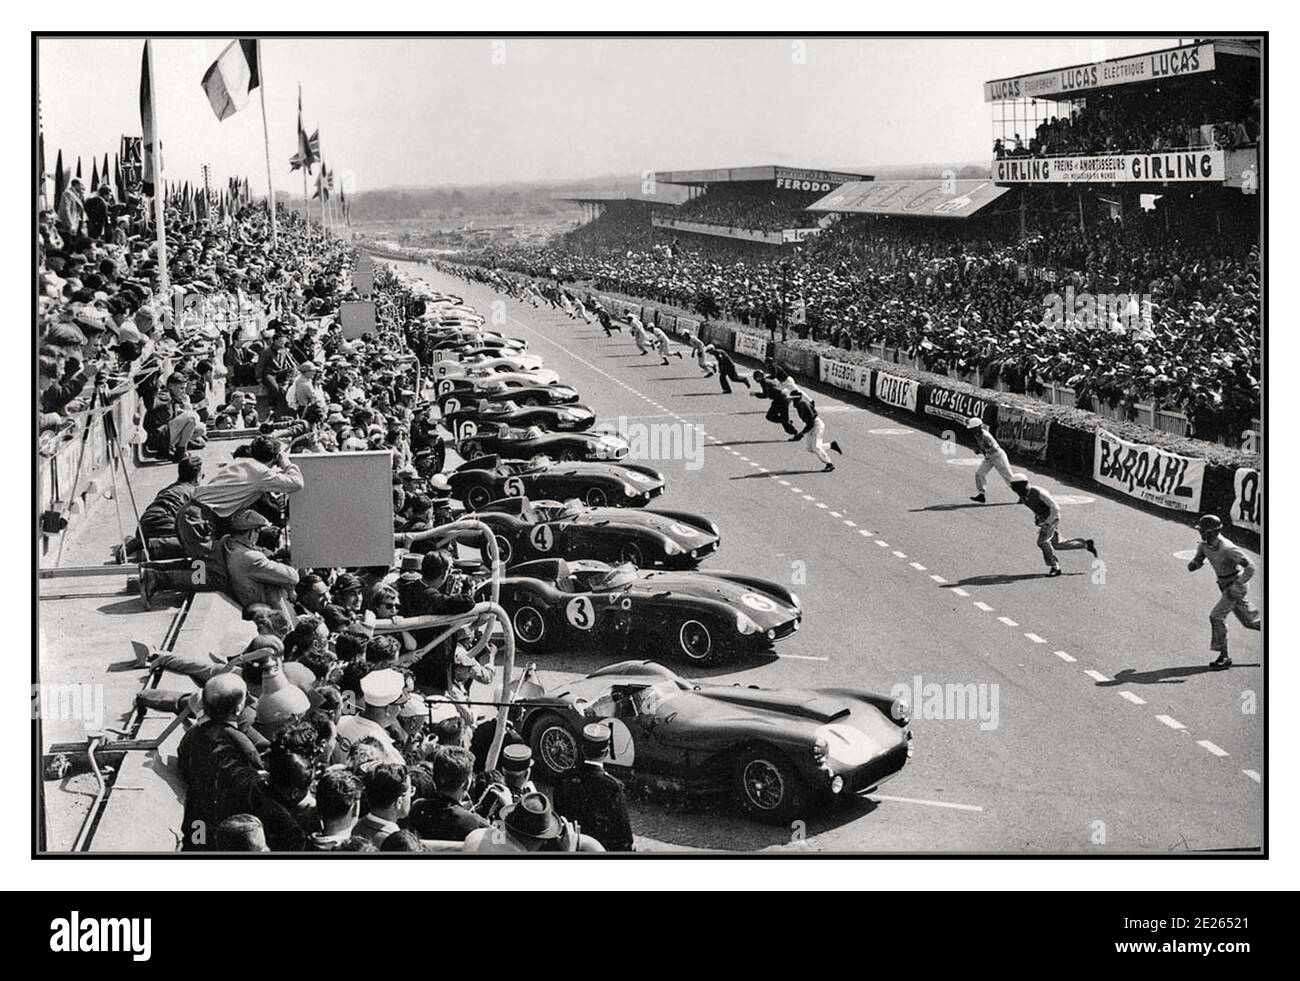 1955 le Mans 24 HR archivio gara corsa tradizionale partenza corsa con piloti sprinting alle loro auto a 1955 le Mans 24 ore di partenza gara. Questa gara ha visto un tragico e catastrofico incidente che ha ucciso ottantatre spettatori quando un motore di auto Mercedes e parti affettate attraverso la folla principale stand. Mercedes si è ritirata dalle corse automobilistiche per un decennio di conseguenza. Vincitore assoluto : Jaguar D Type No 6 guidato da M. Hawthorn e I. Bueb. Distanza percorsa 4.135,380 km ad una media di 172,308 km/h Gap tra il 1st e il 2nd° posto: 73,362 km Foto Stock